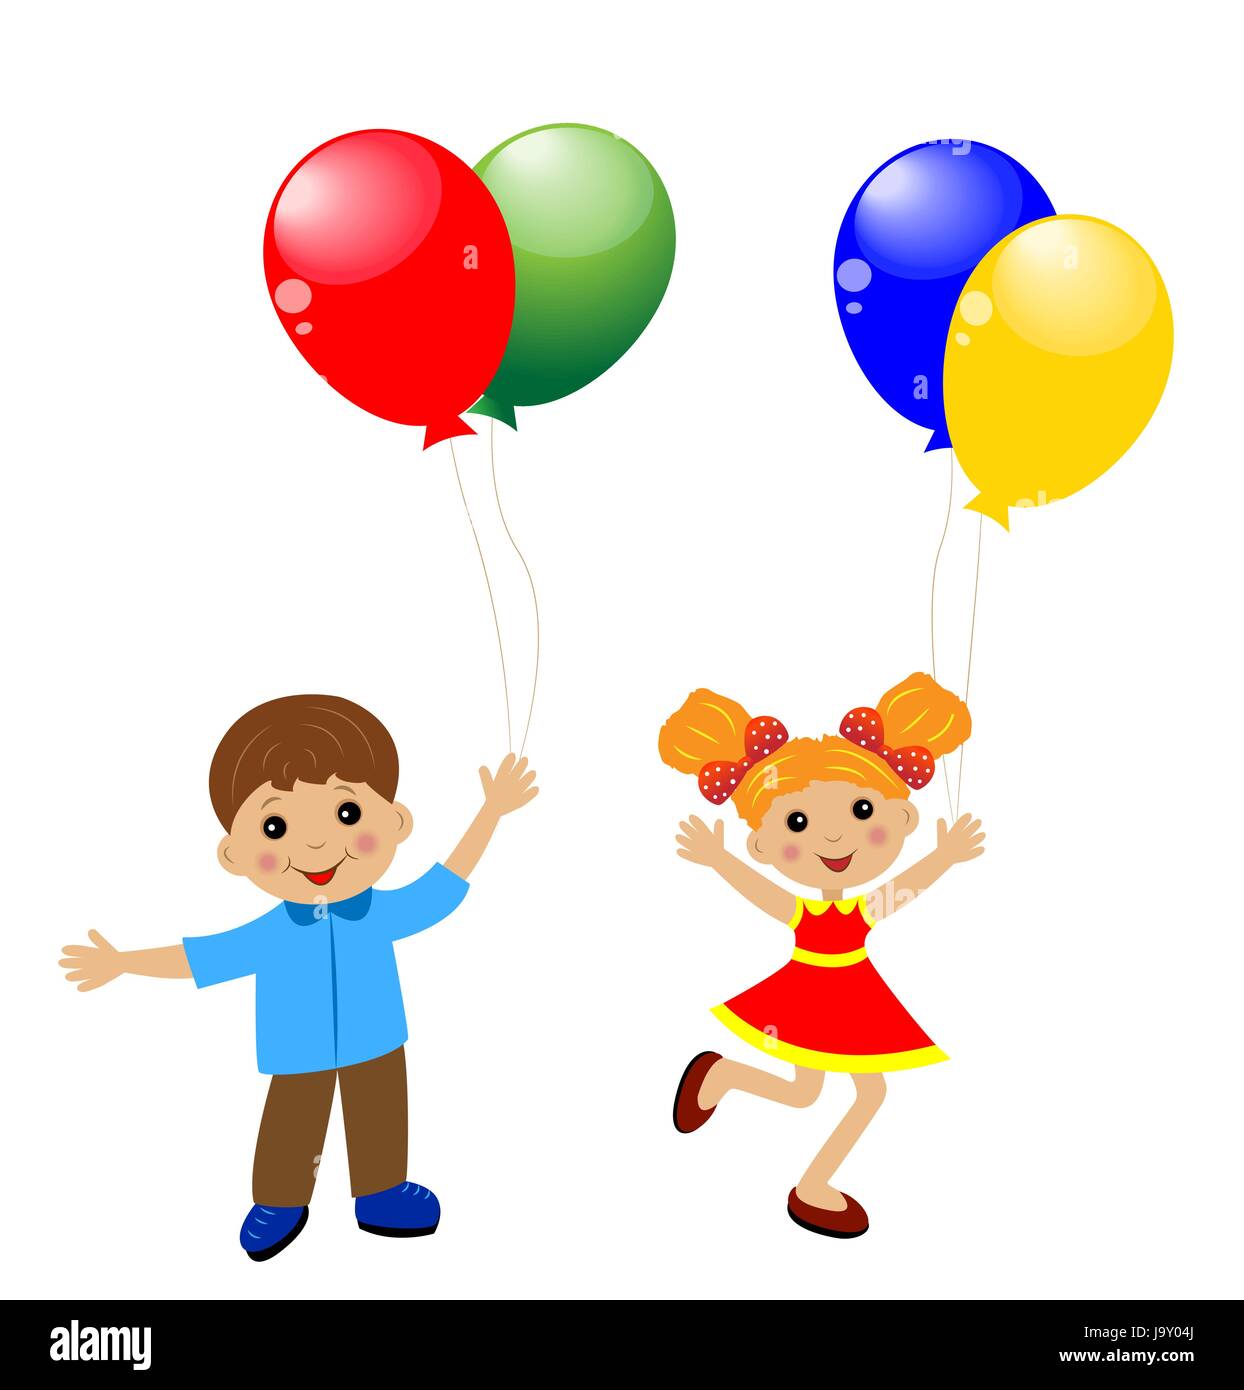 little child with balloon, vector illustration Stock Vector